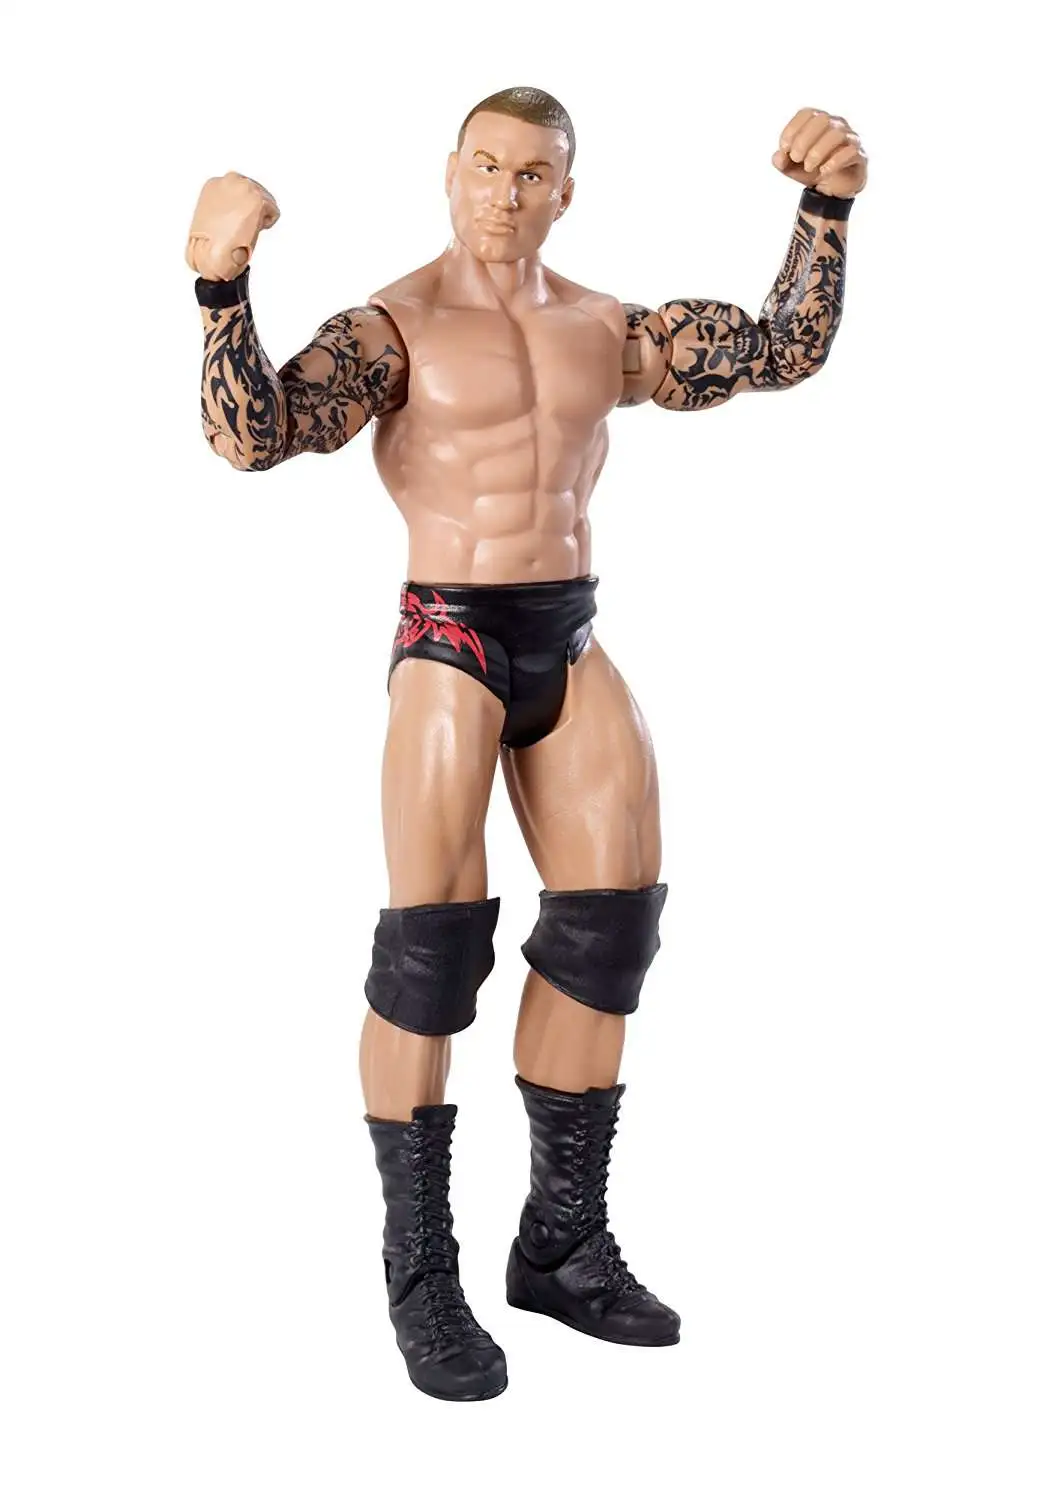 J7Randy Orton 2011 WWE Mattel Wrestling Figure 